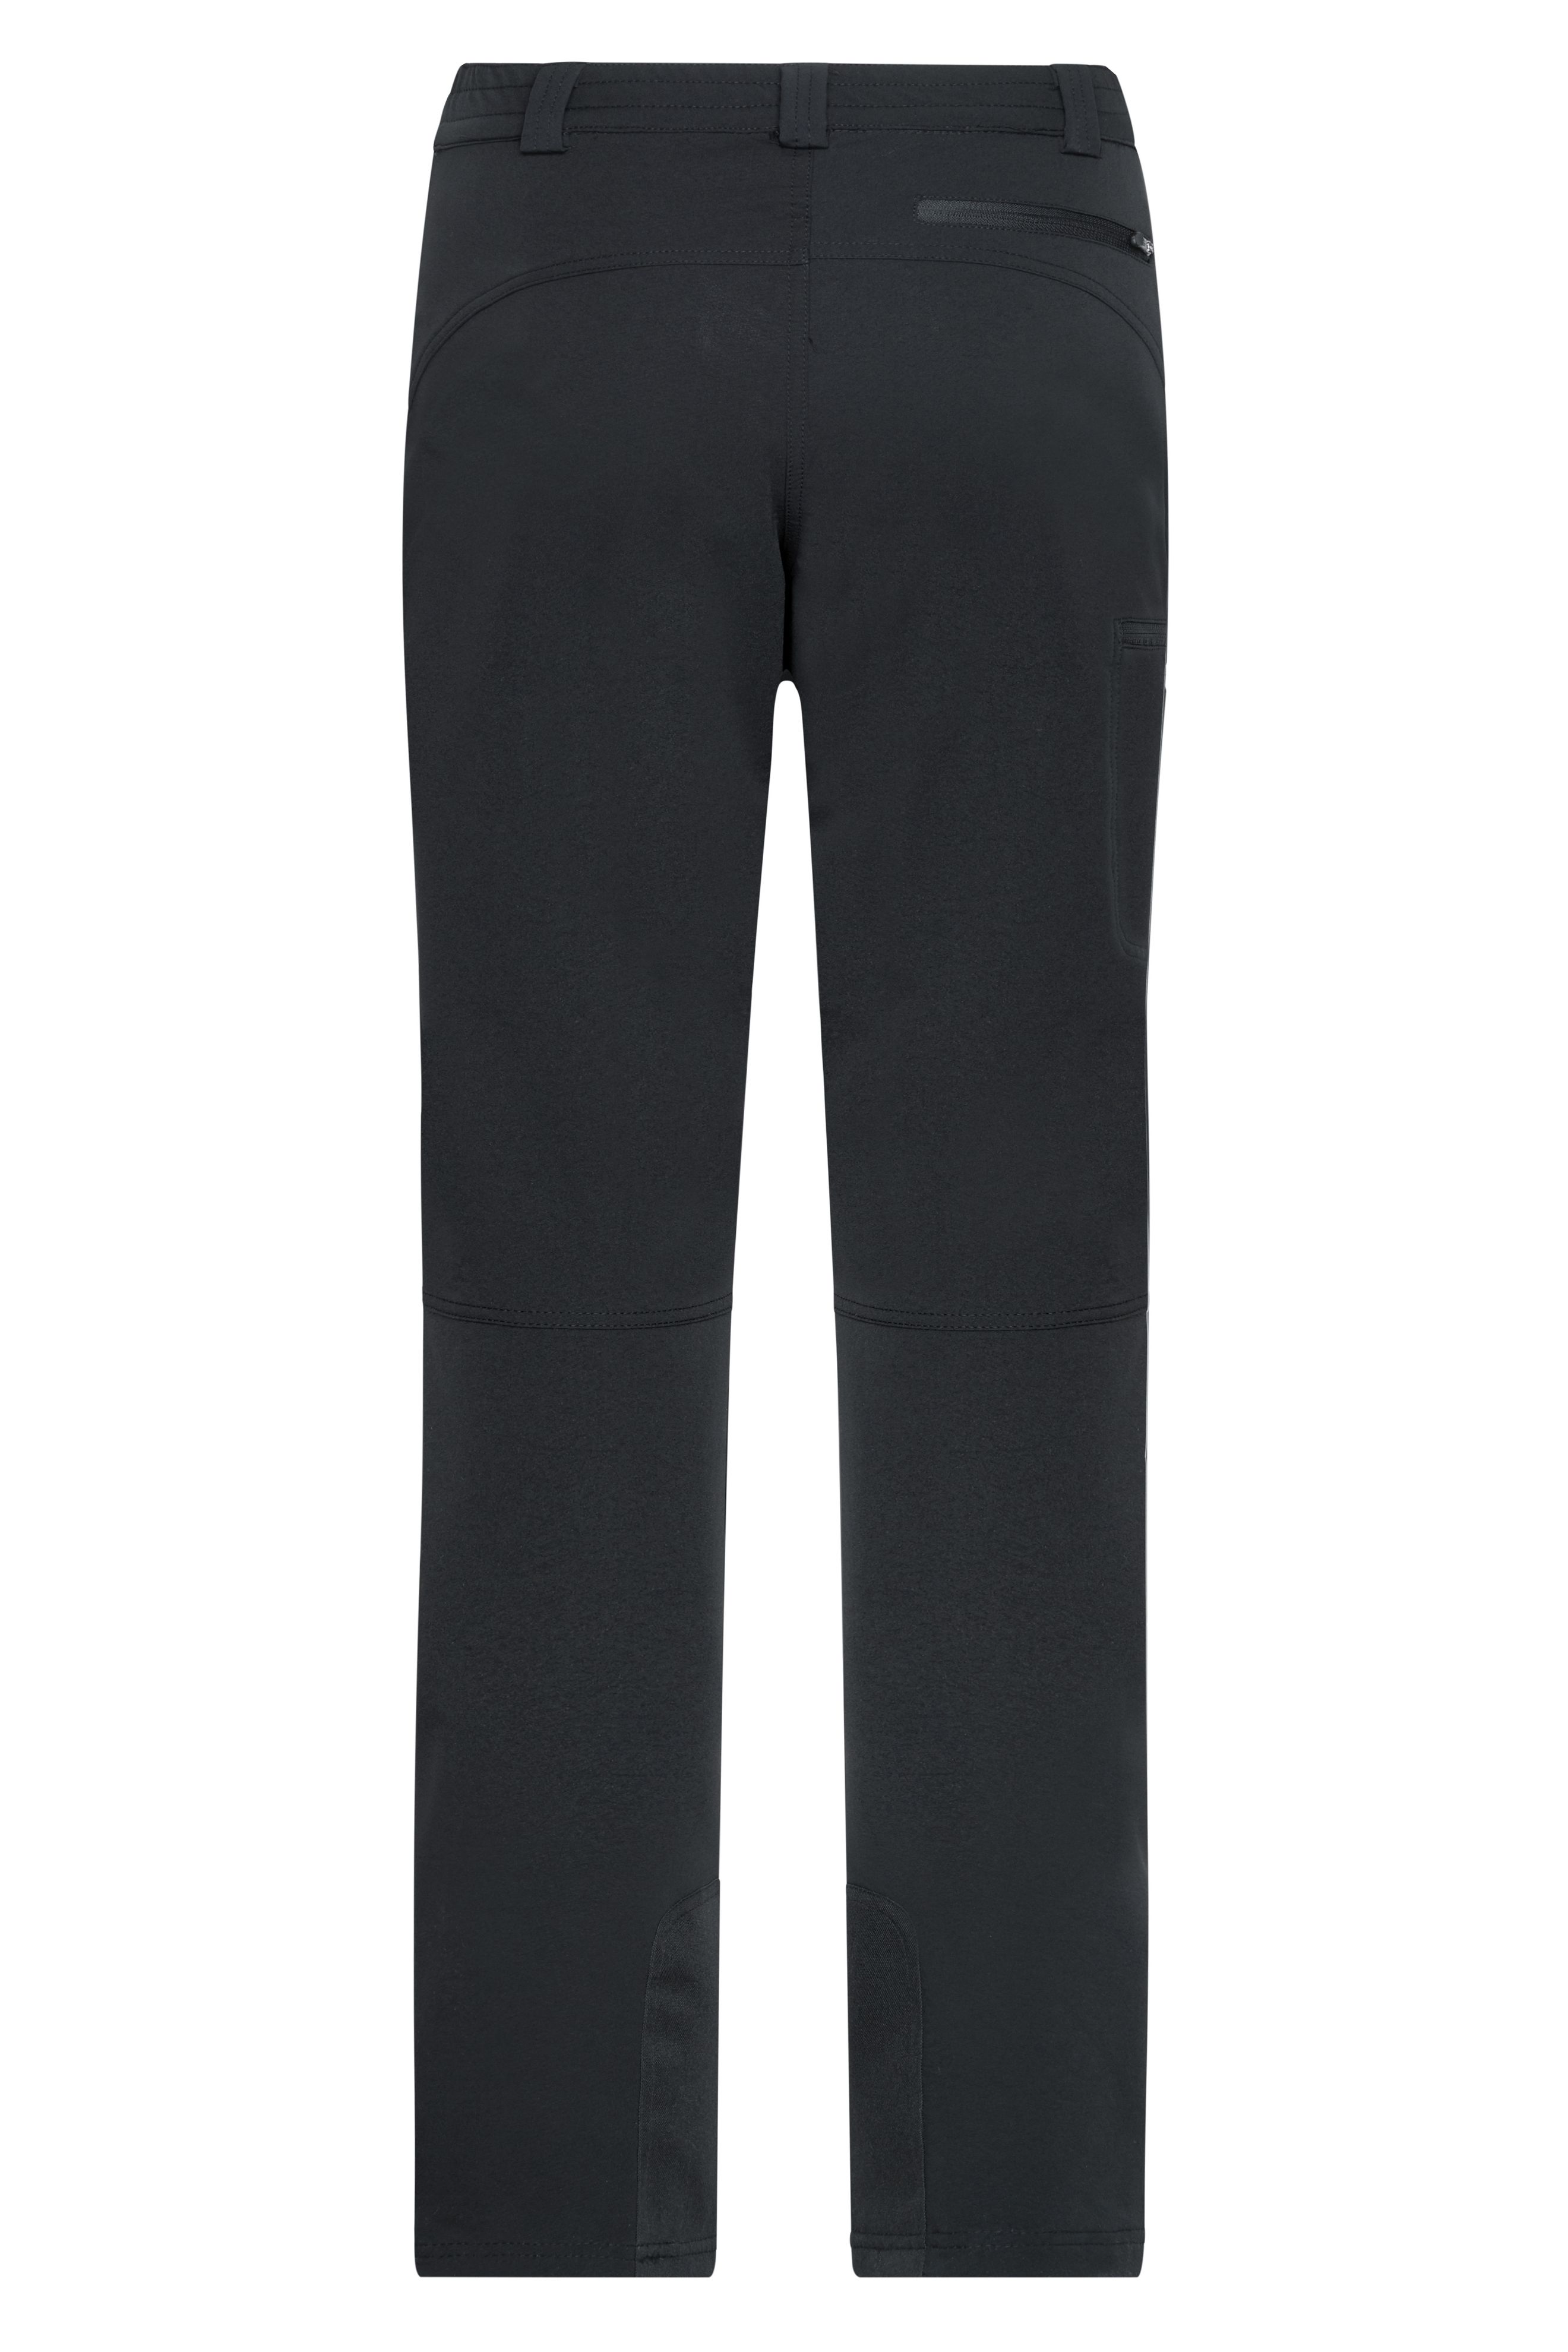 Men's Outdoor Pants JN585 Elastische Outdoorhose mit leicht geformter Kniepartie